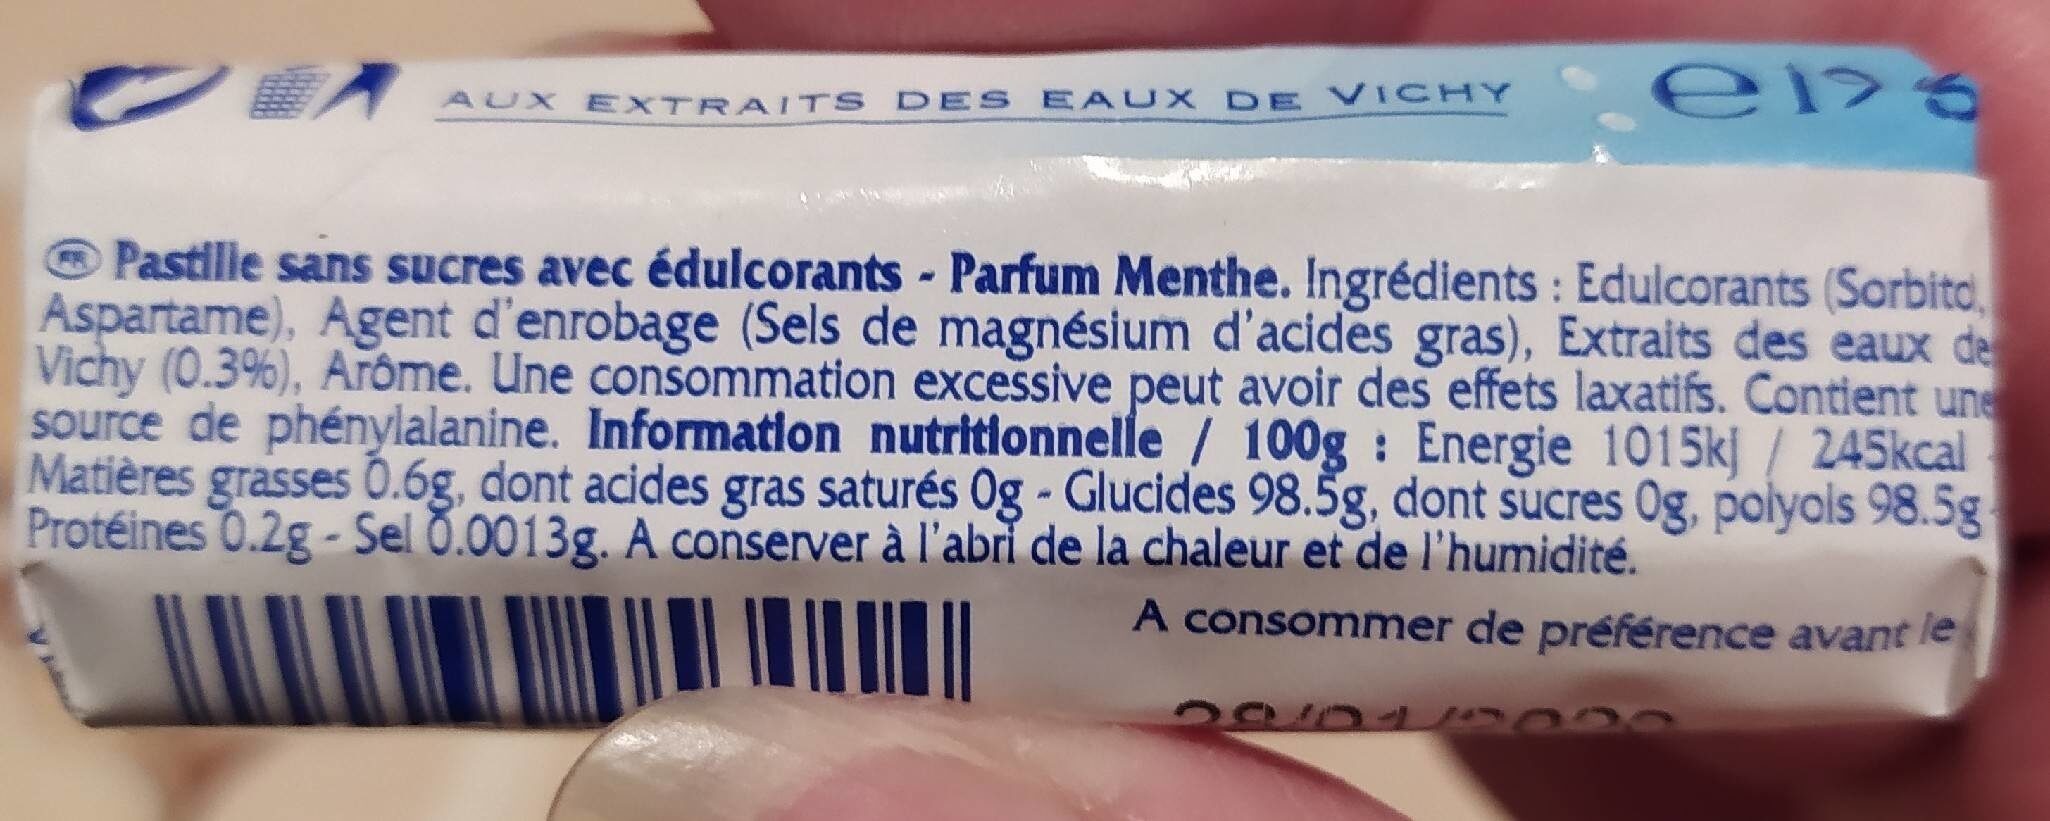 Pastille menthe - Ingredienser - fr